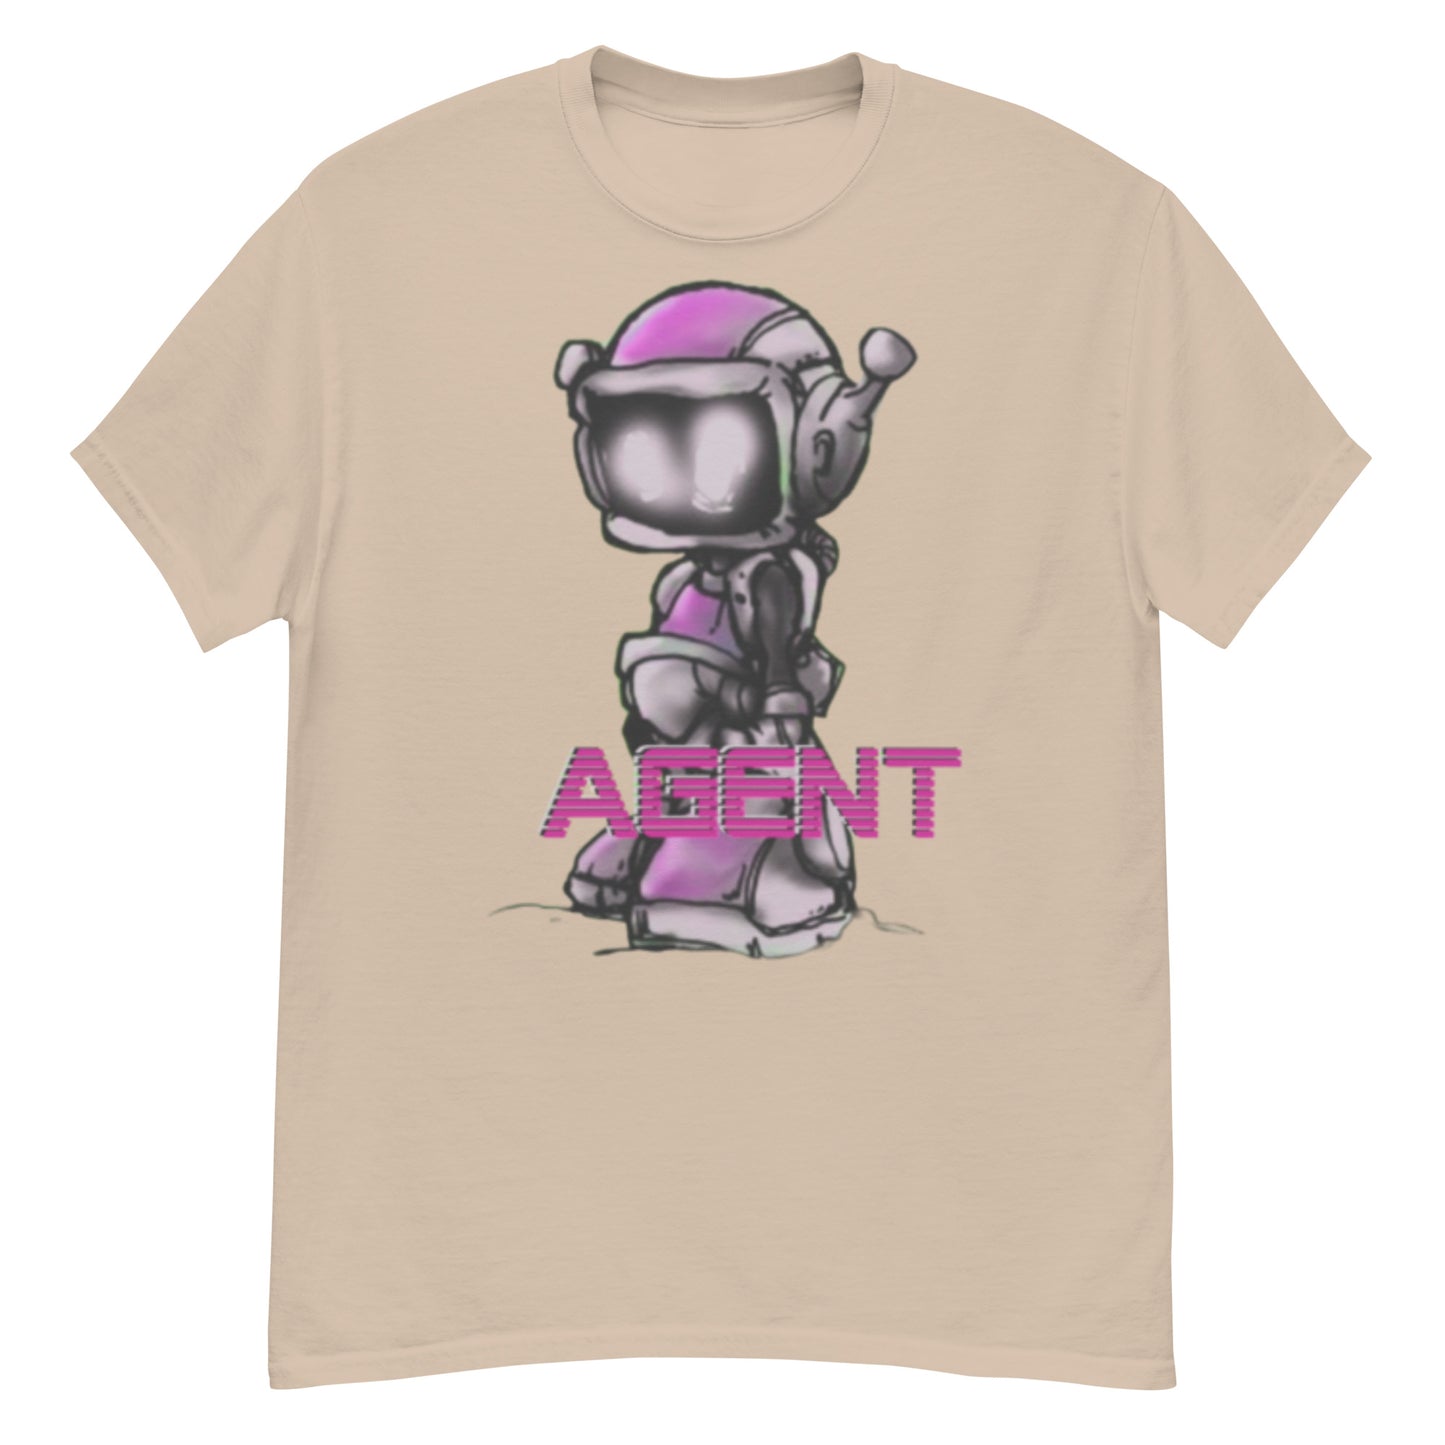 Agent Pink Robot T-Shirt -Basic Tee